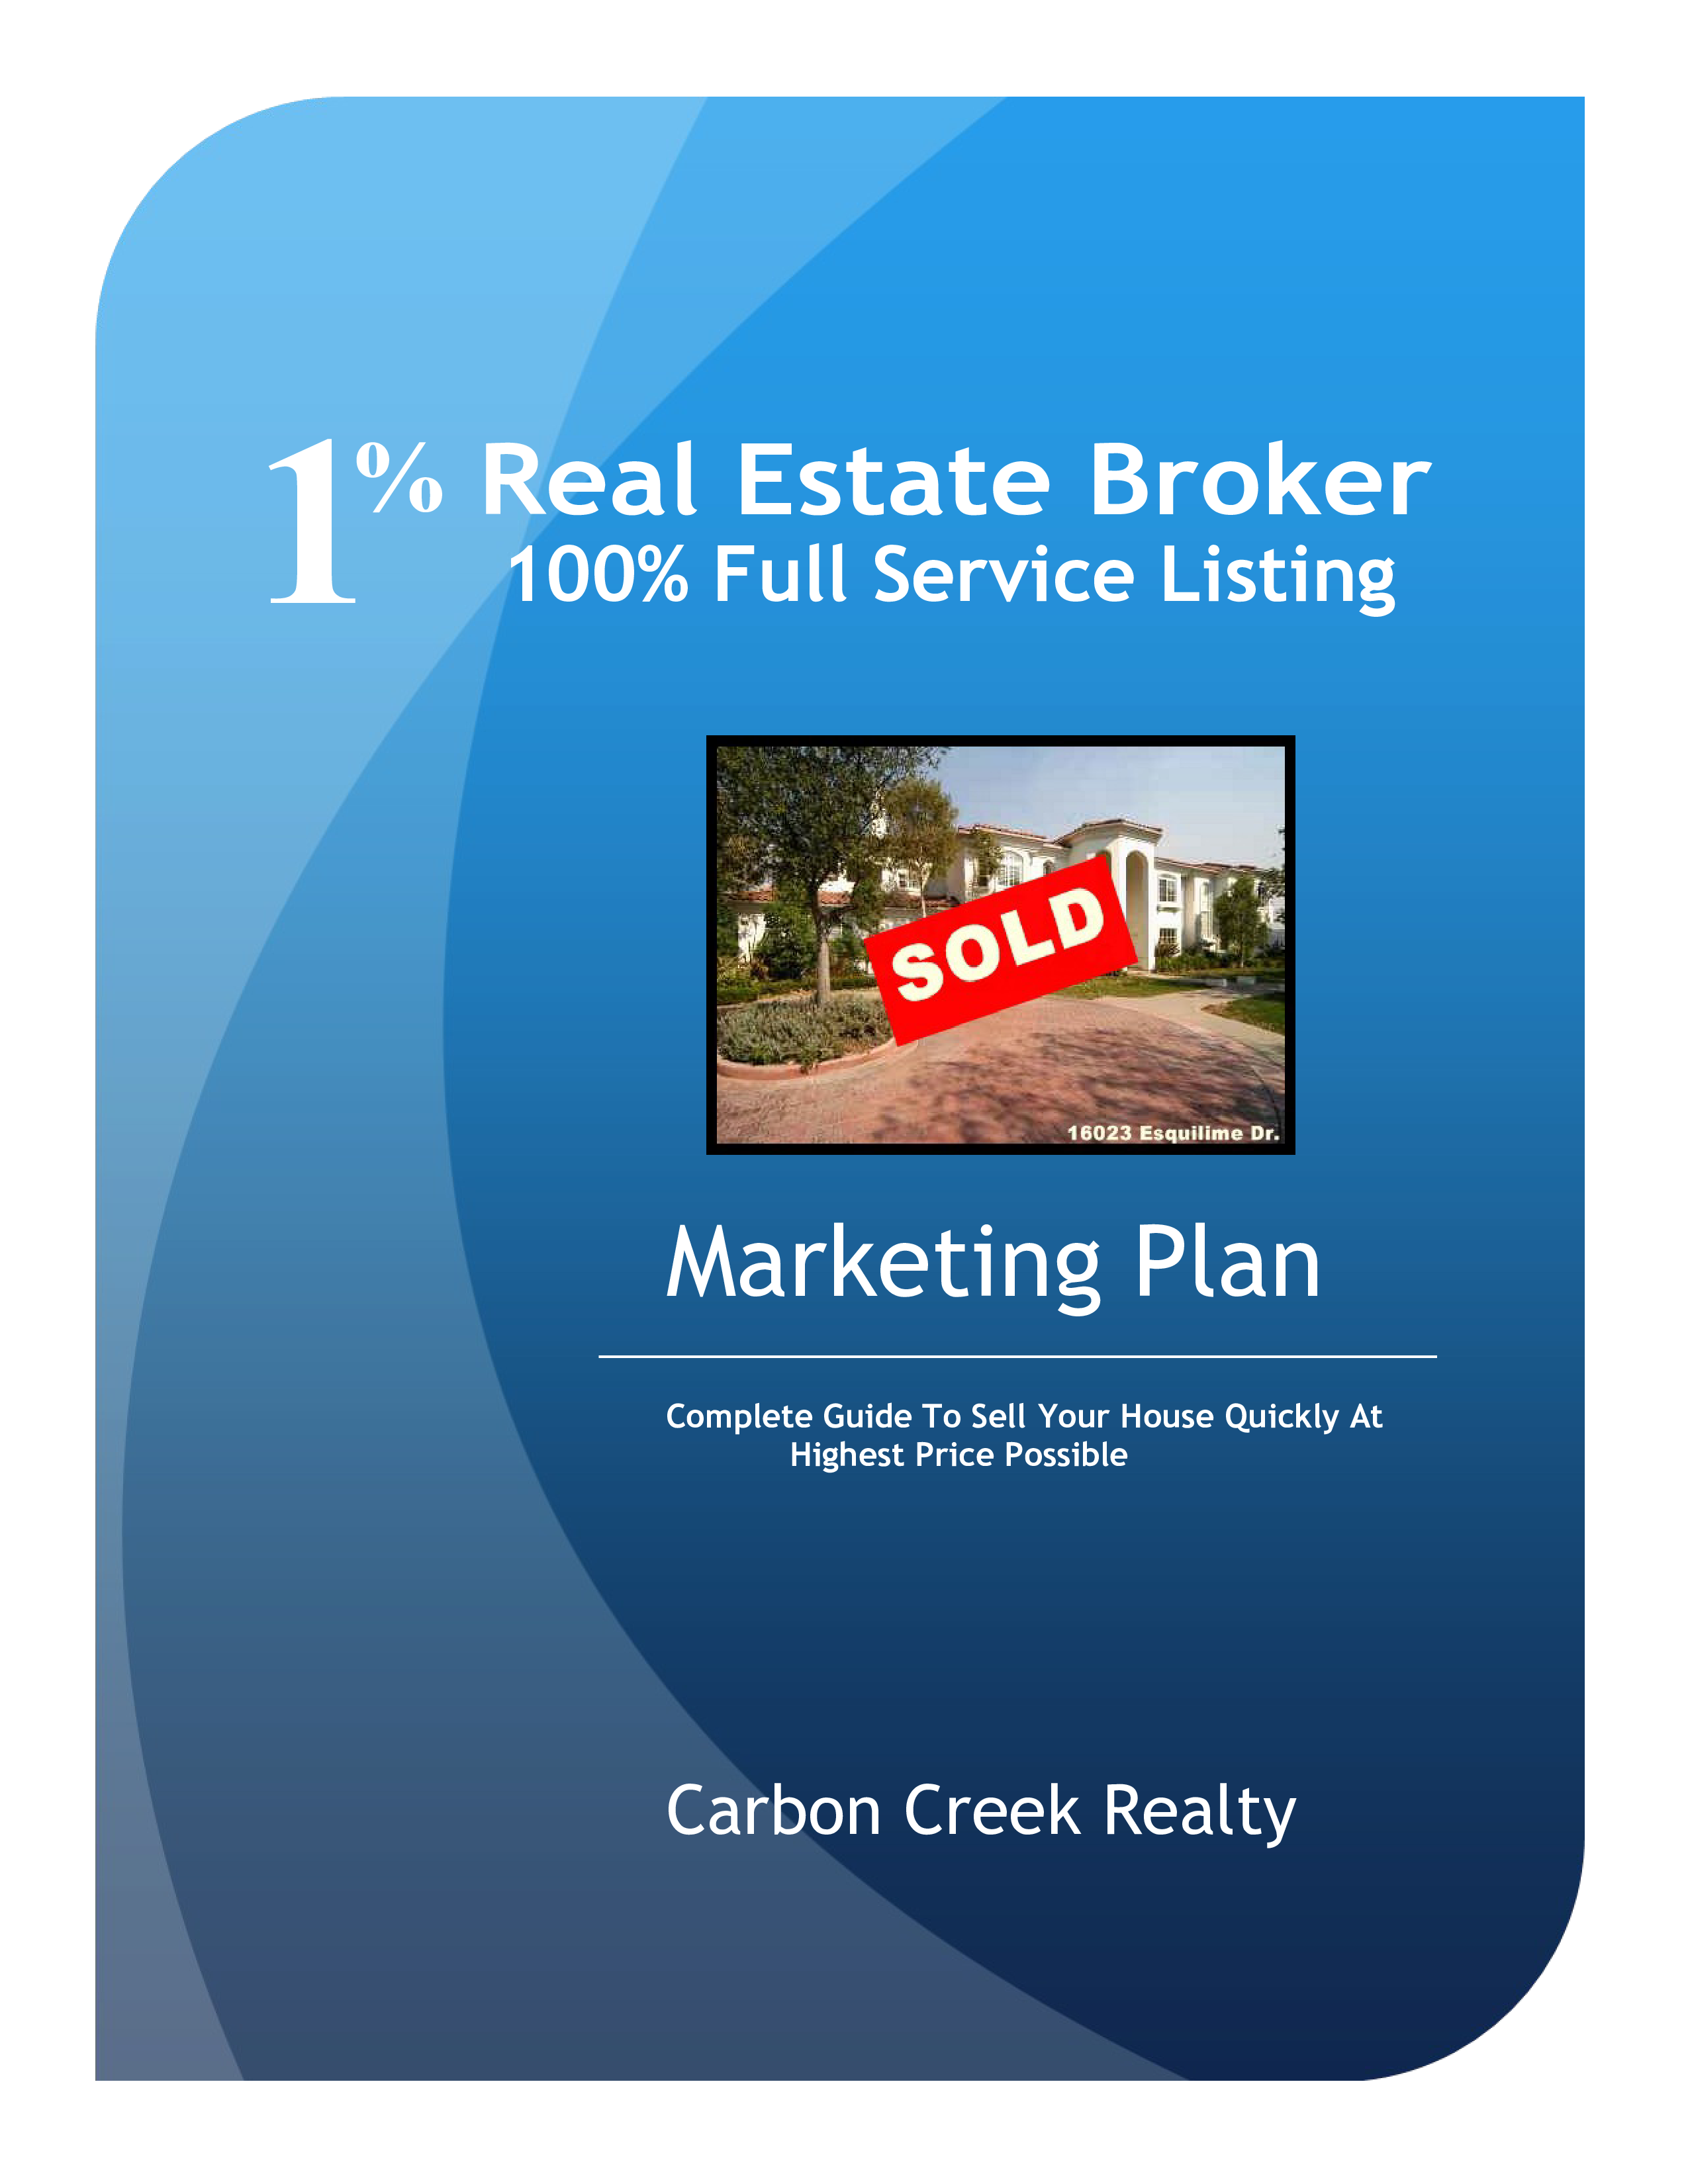 Real Estate Broker Marketing Plan main image